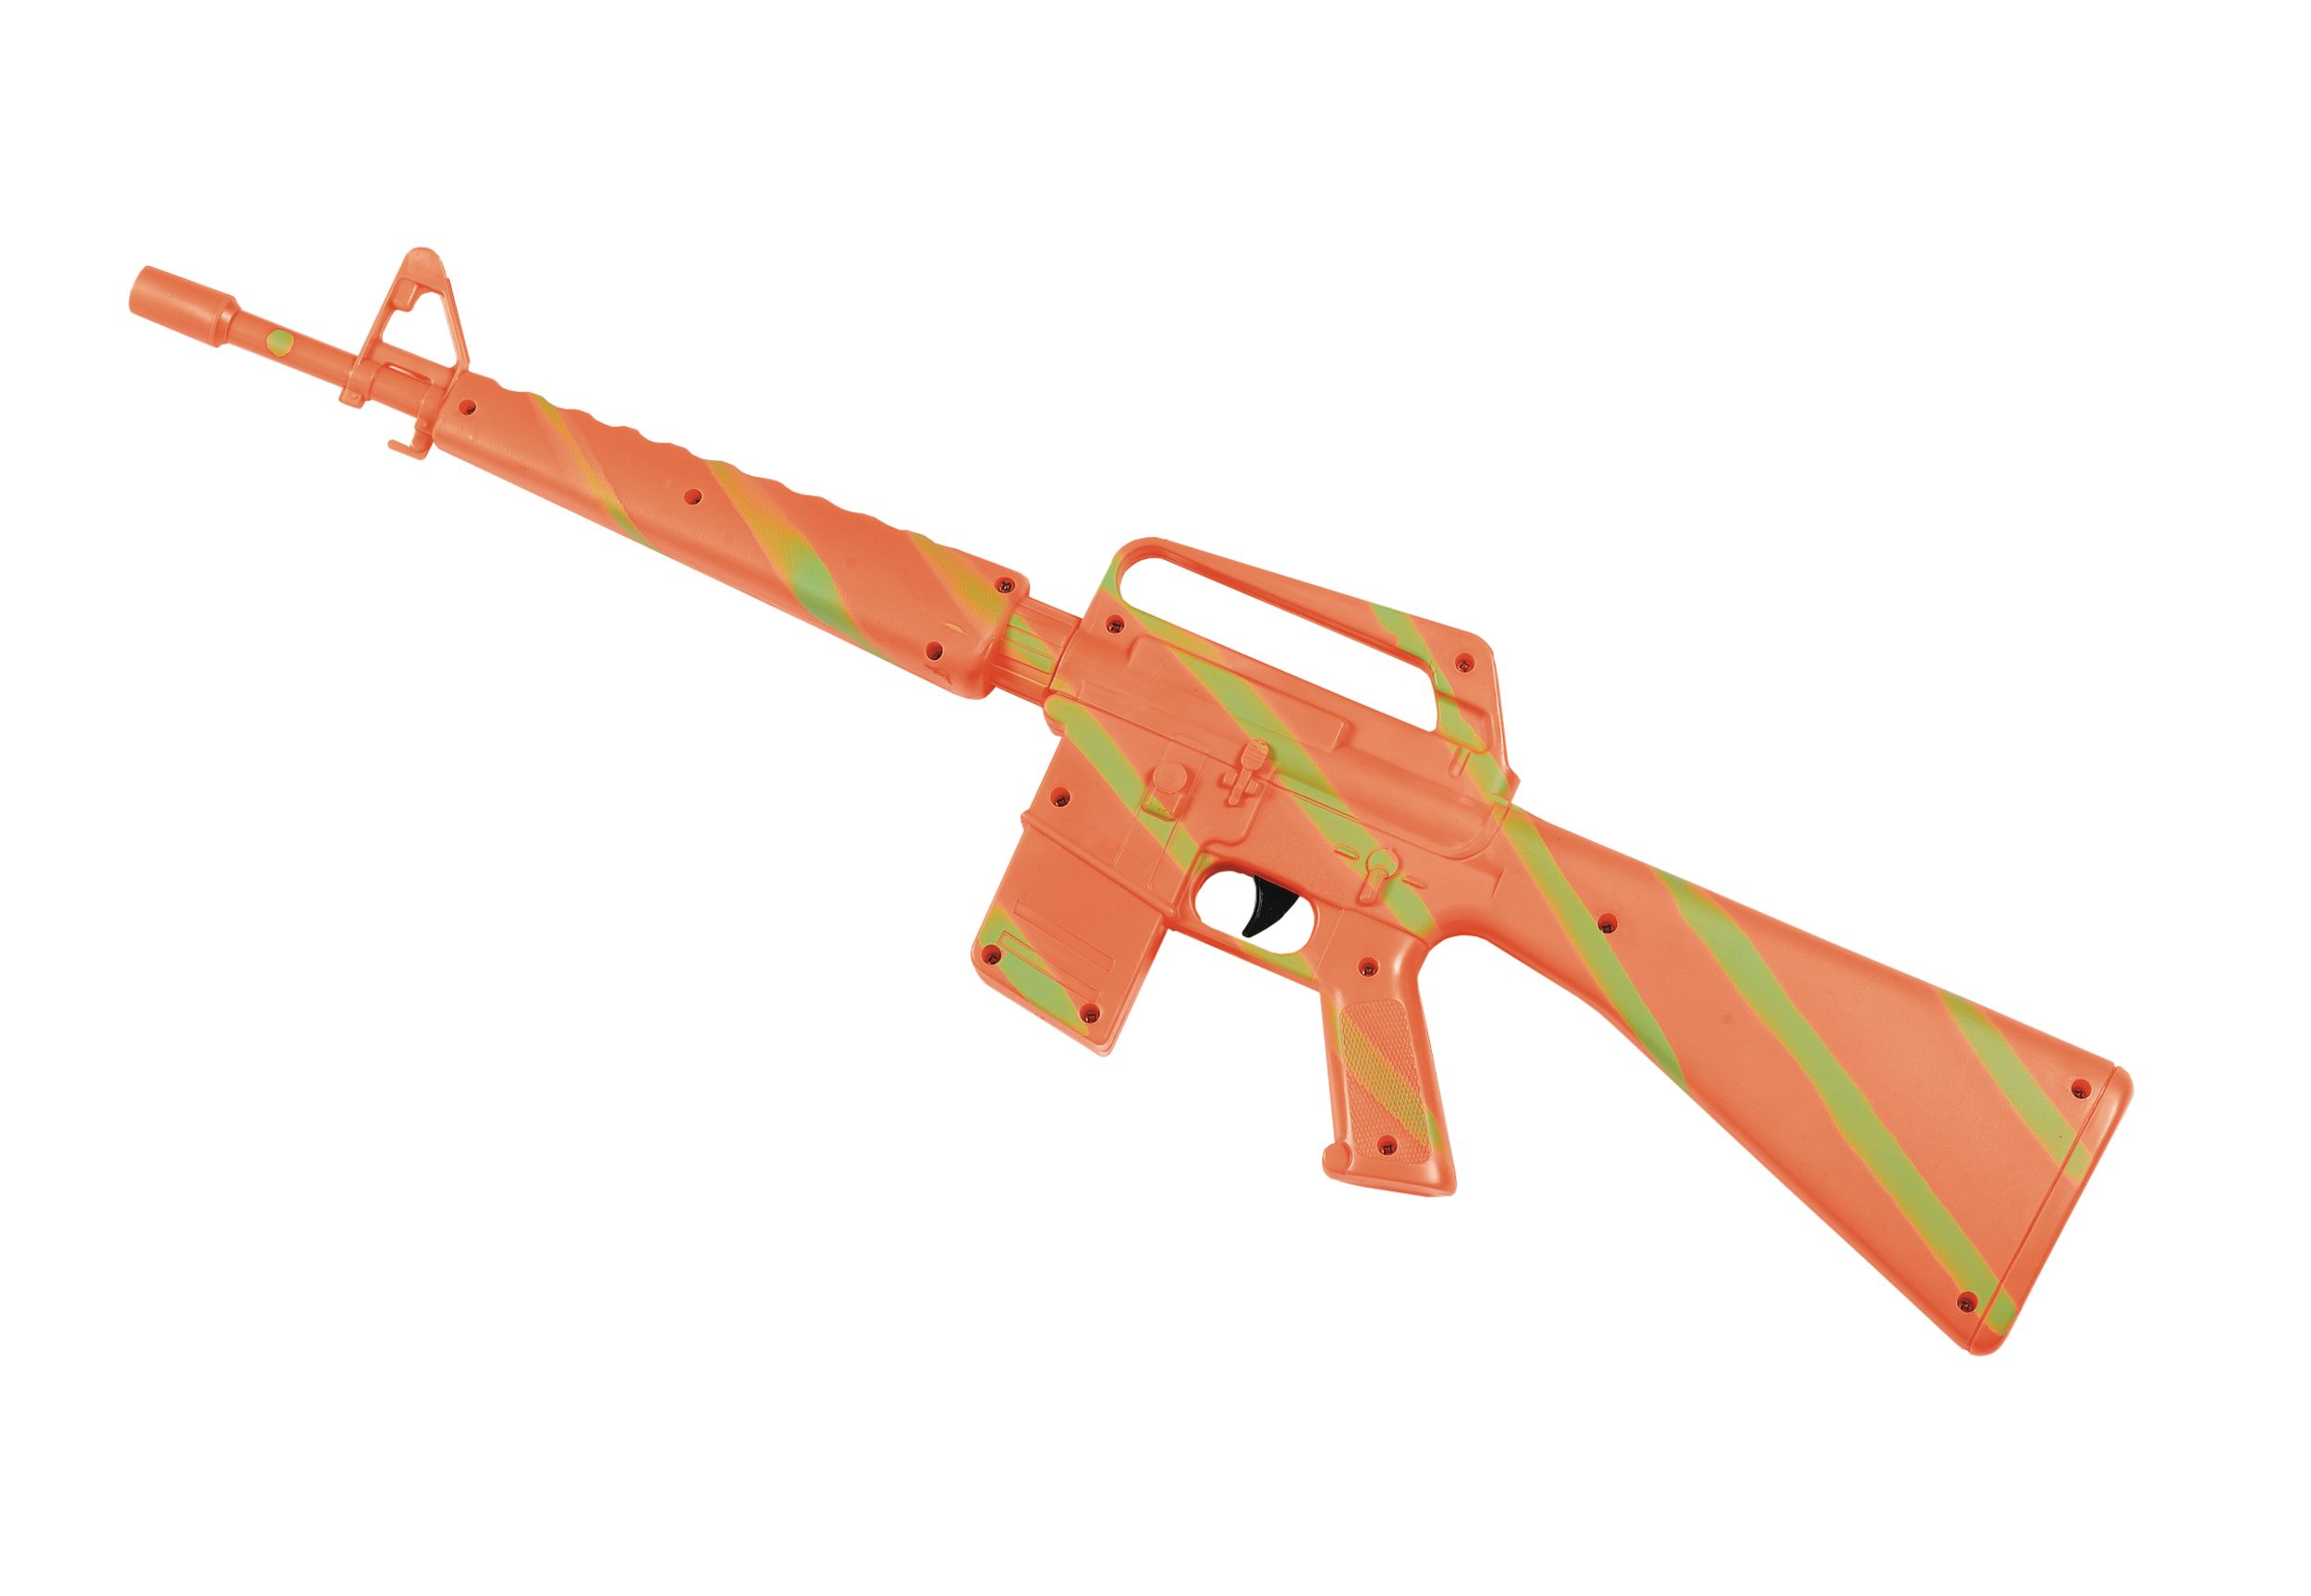 Jouet mitraillette M16 avec effets sonores, orange, 38 po, accessoire de  costume à porter pour l'Halloween